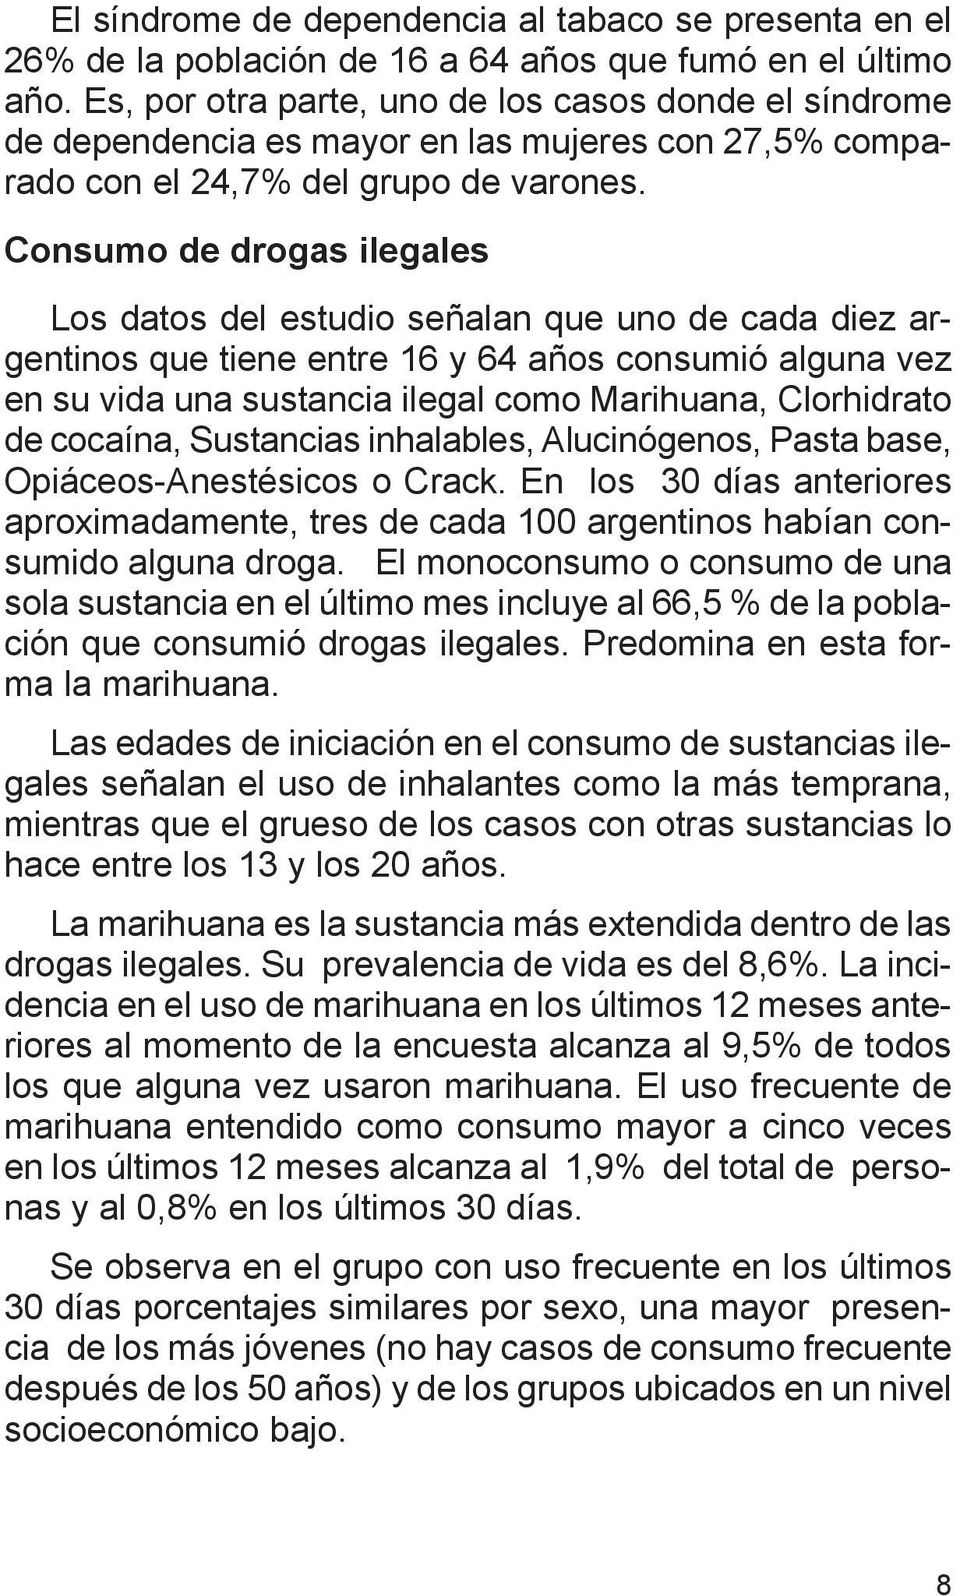 Consumo de drogas ilegales Los datos del estudio señalan que uno de cada diez argentinos que tiene entre 16 y 64 años consumió alguna vez en su vida una sustancia ilegal como Marihuana, Clorhidrato